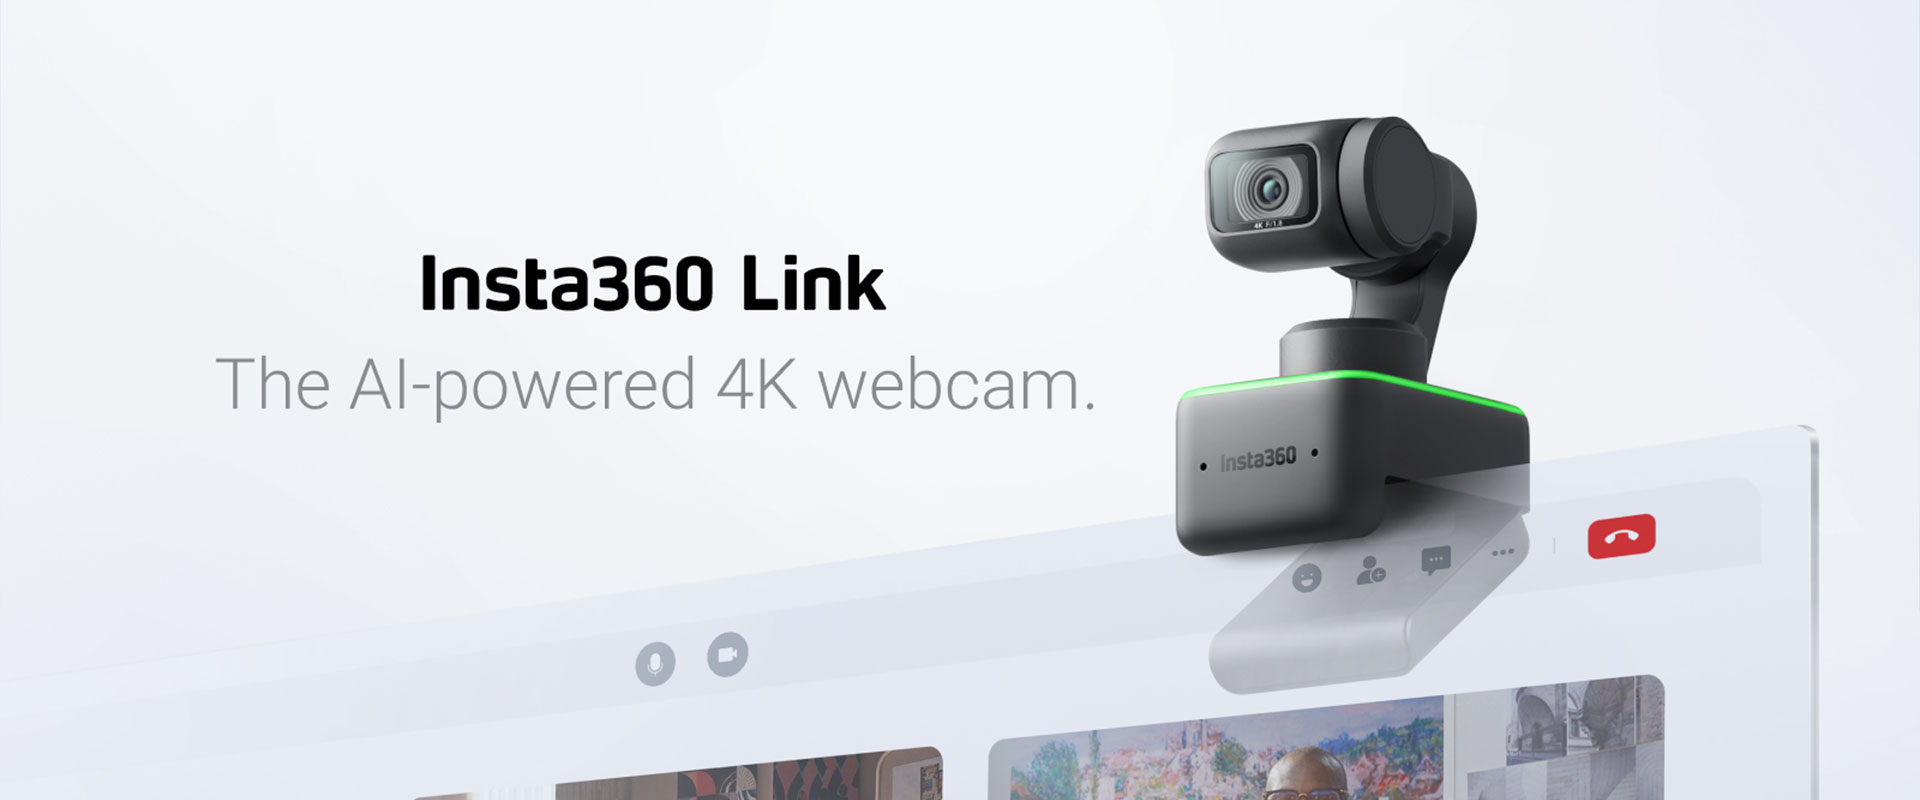 Insta360 Link The ai powered 4K webcam